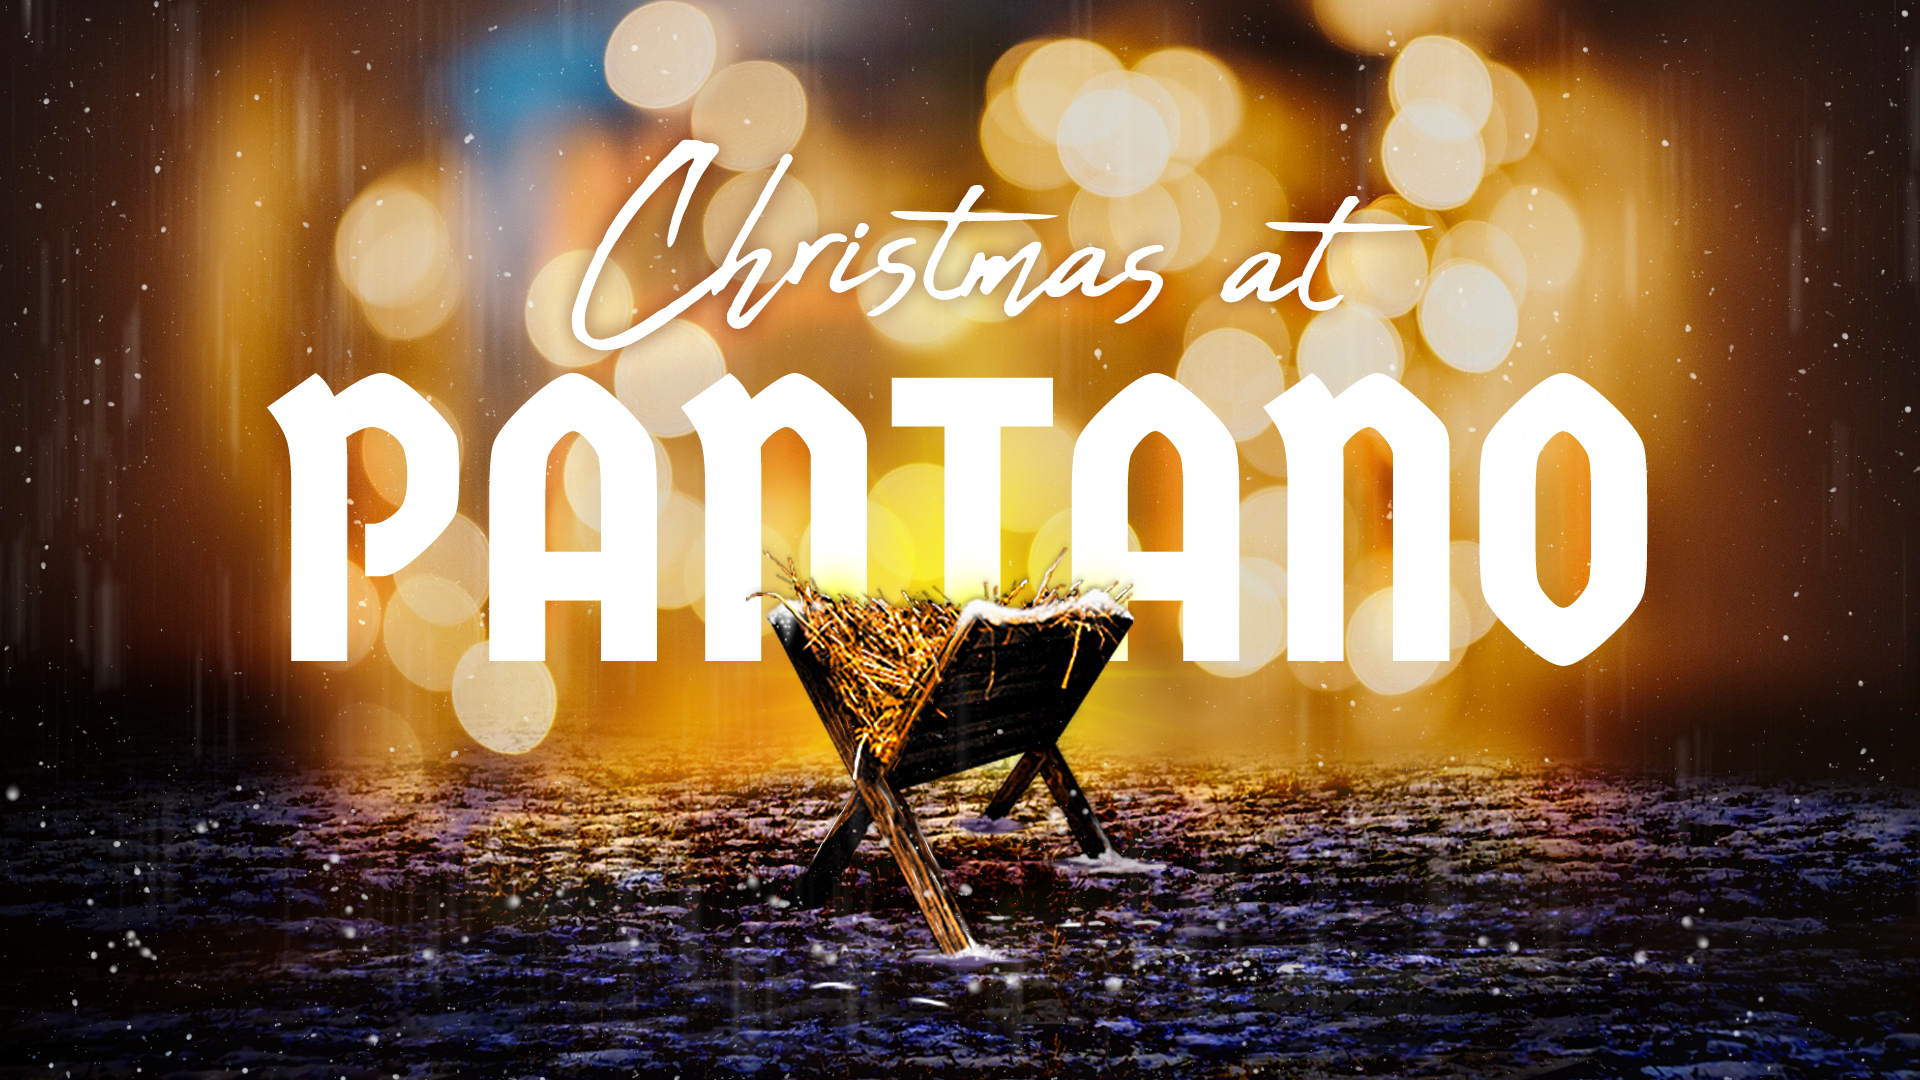 Image: Christmas At Pantano